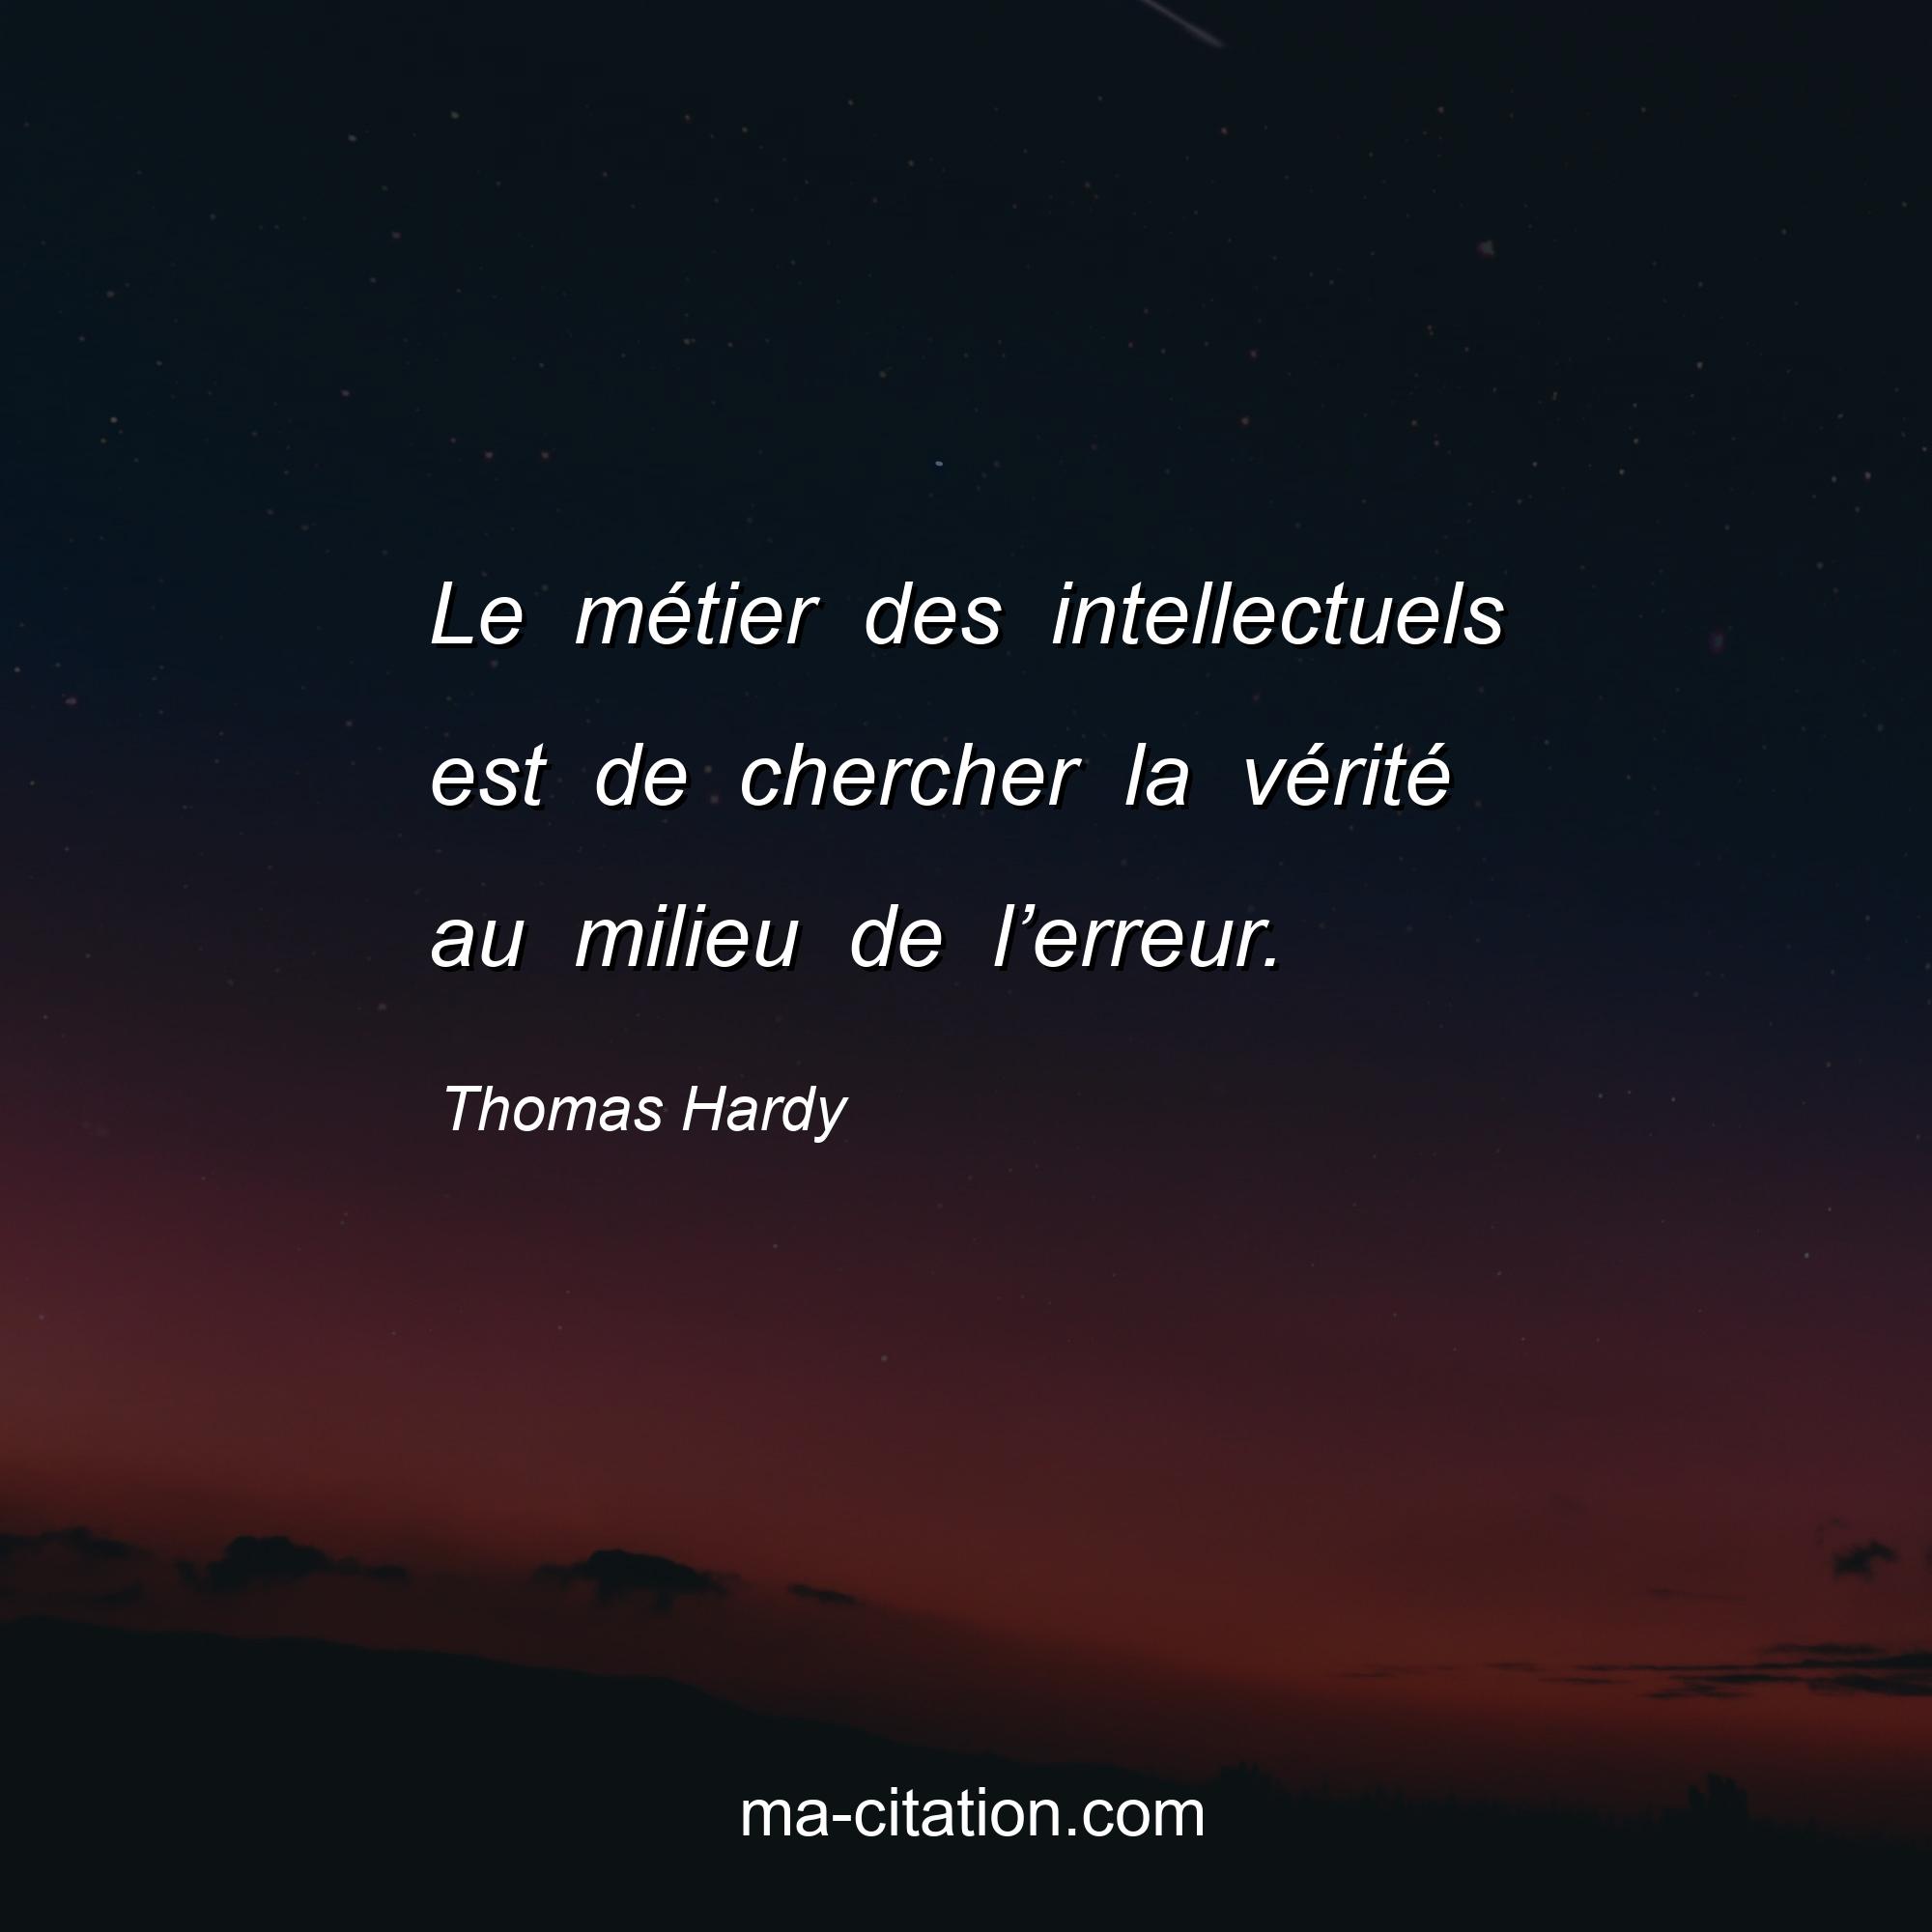 Thomas Hardy : Le métier des intellectuels est de chercher la vérité au milieu de l’erreur.